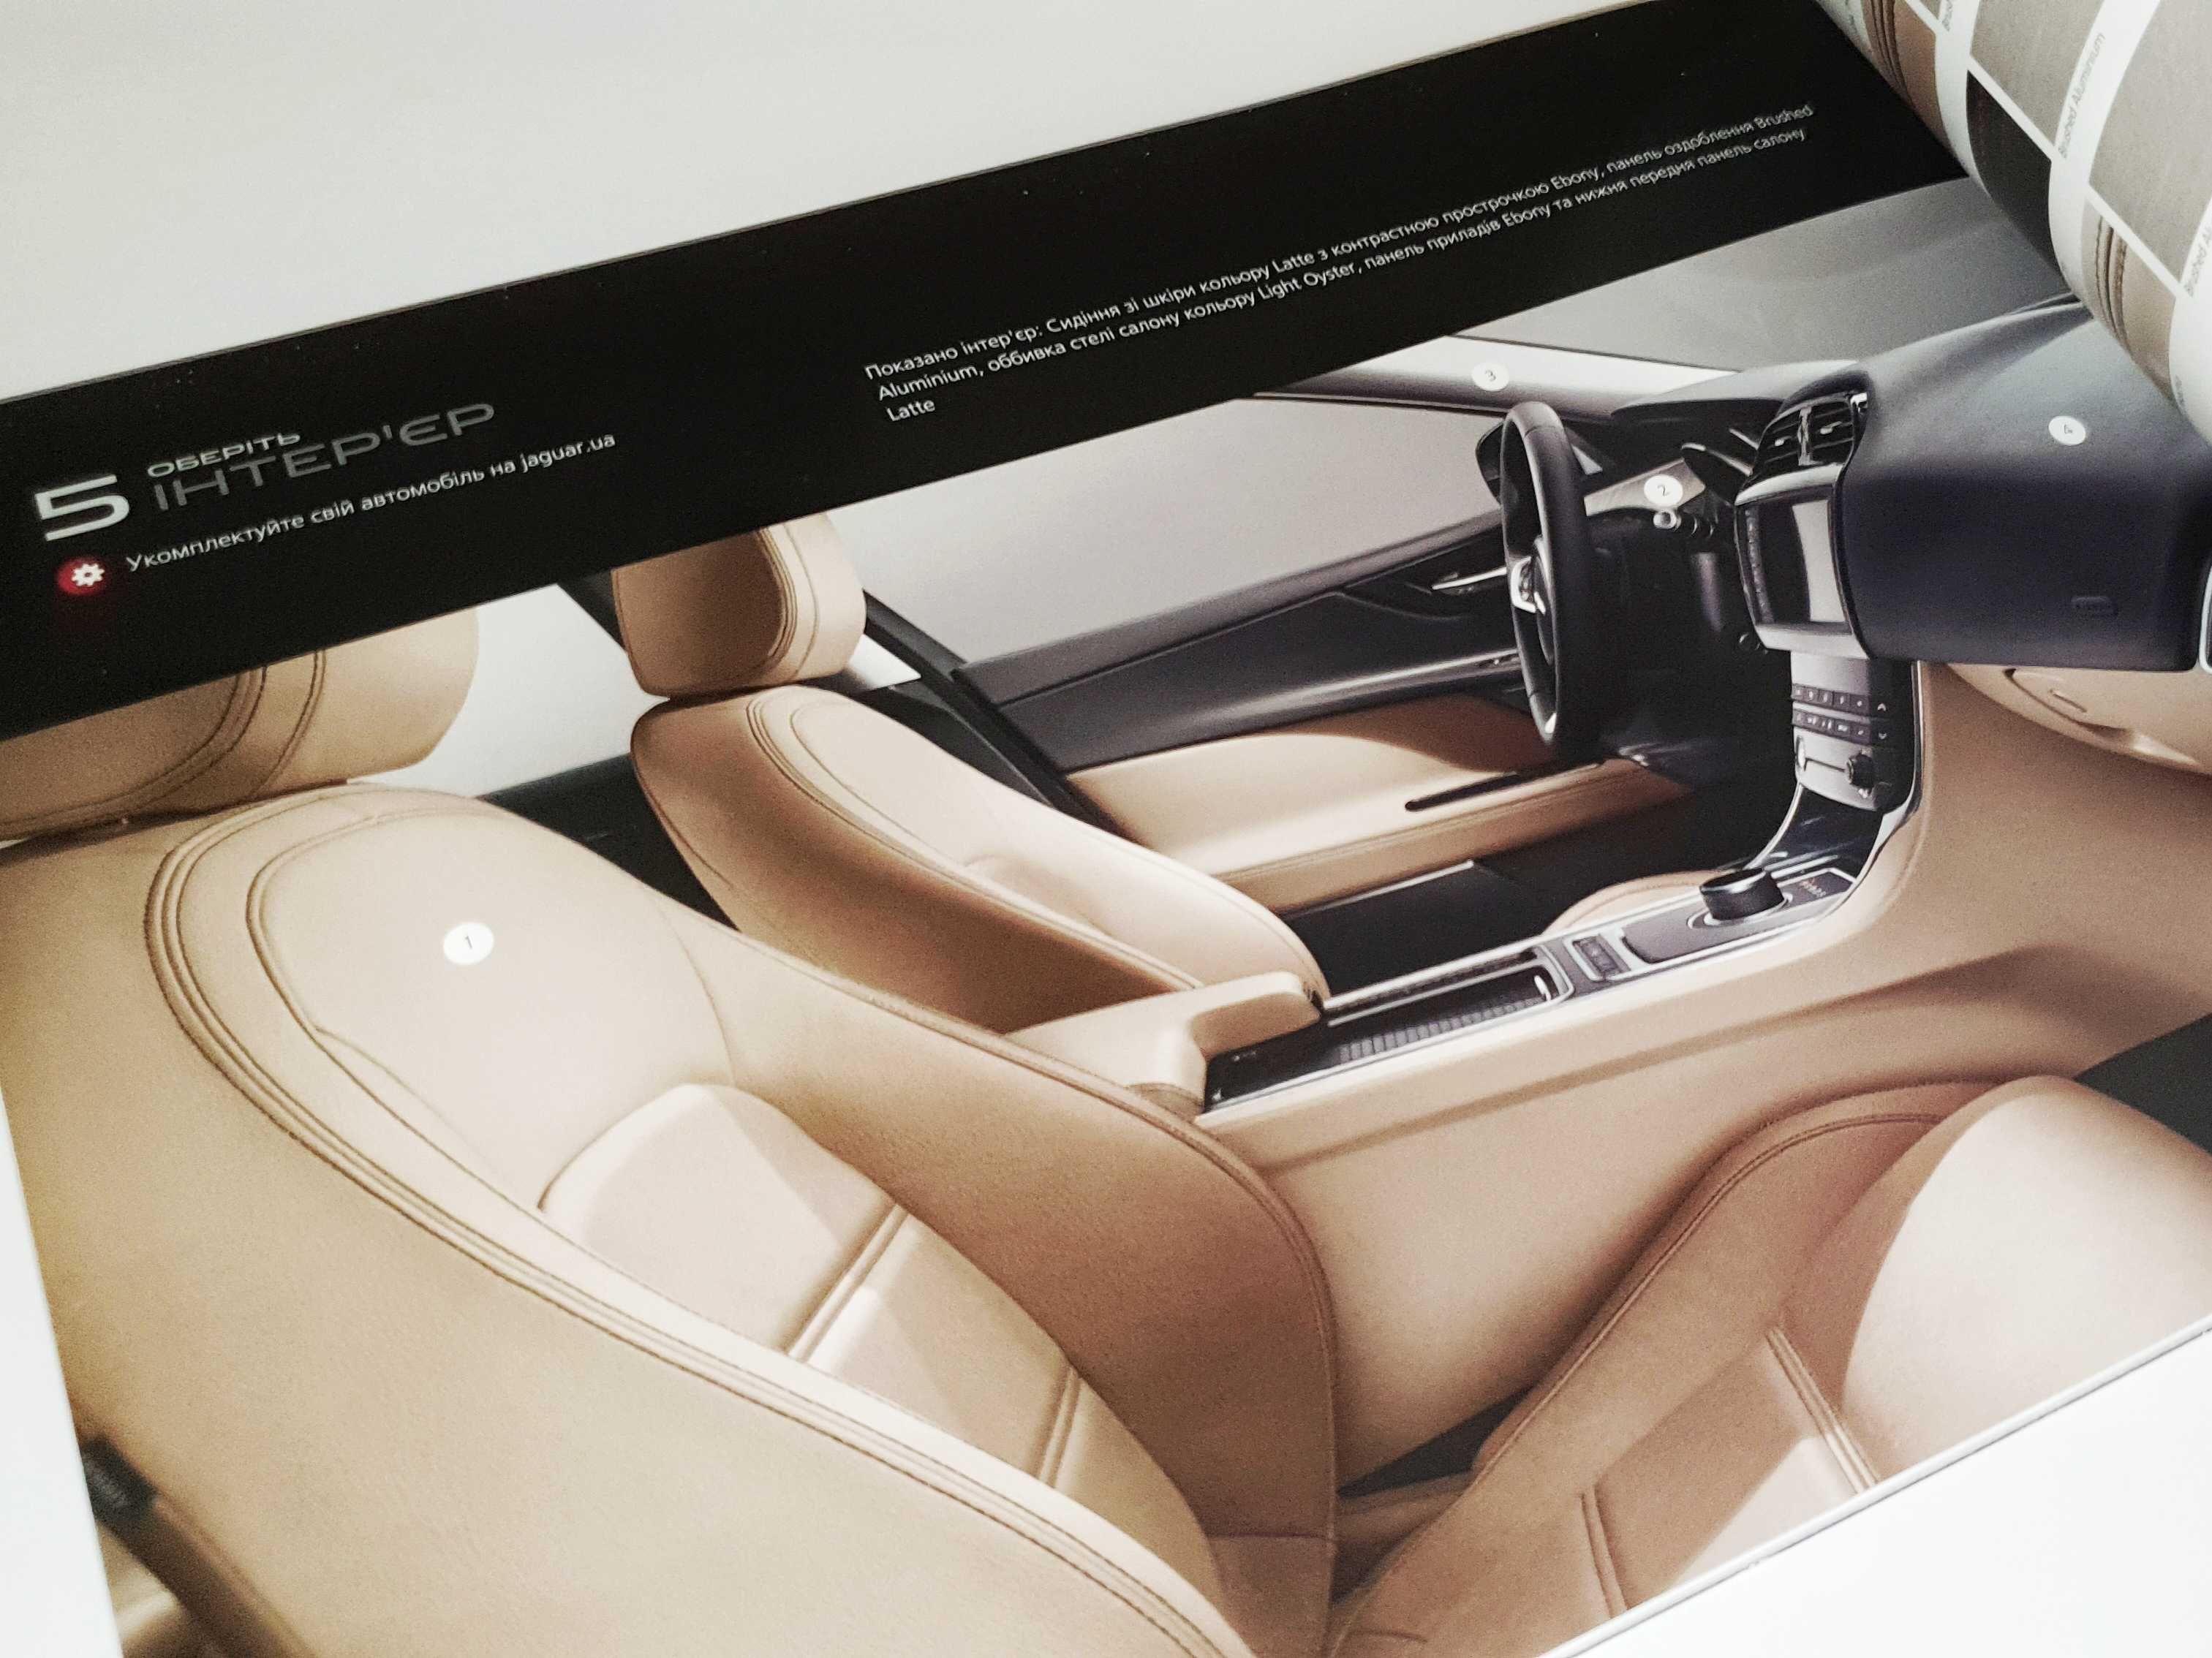 Новый и оригинальный конфигуратор, каталог для комплектации Jaguar XE